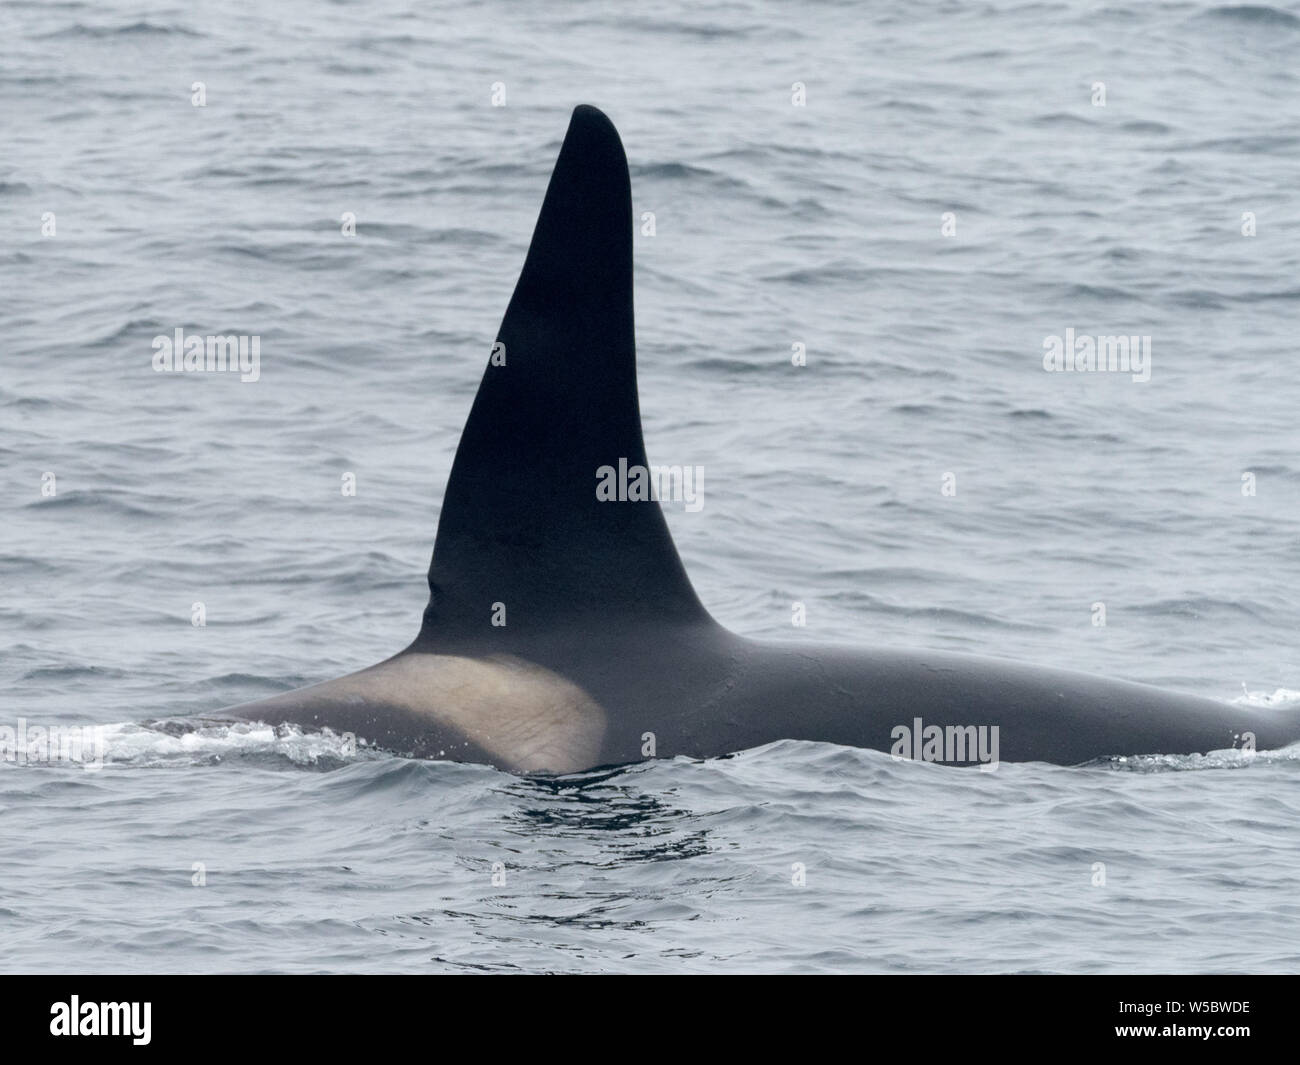 Un residente de la ballena asesina, Orcinus orca, en las Aleutianas de Alaska, EE.UU. Foto de stock